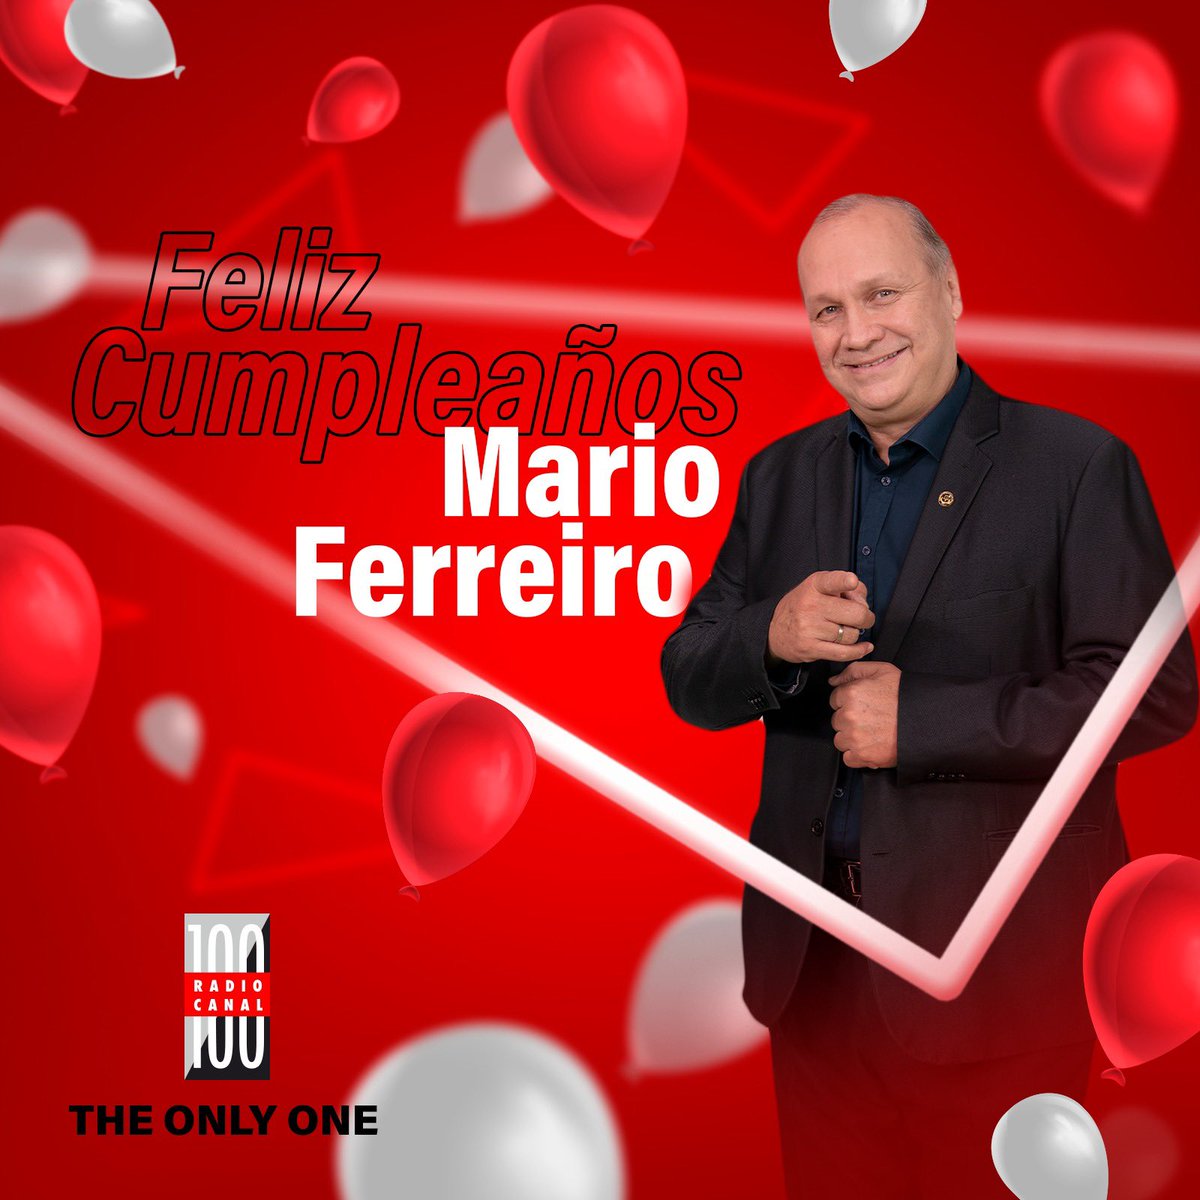 Hoy está de cumpleaños 🎂 nuestro querido compañero @ferreiromario1 🥰🤩🥳 Muchas felicidades en tu día 🎈🎊🎂🎉 Te deseamos lo mejor tus compañeros de #RadioCanal100 📻💯